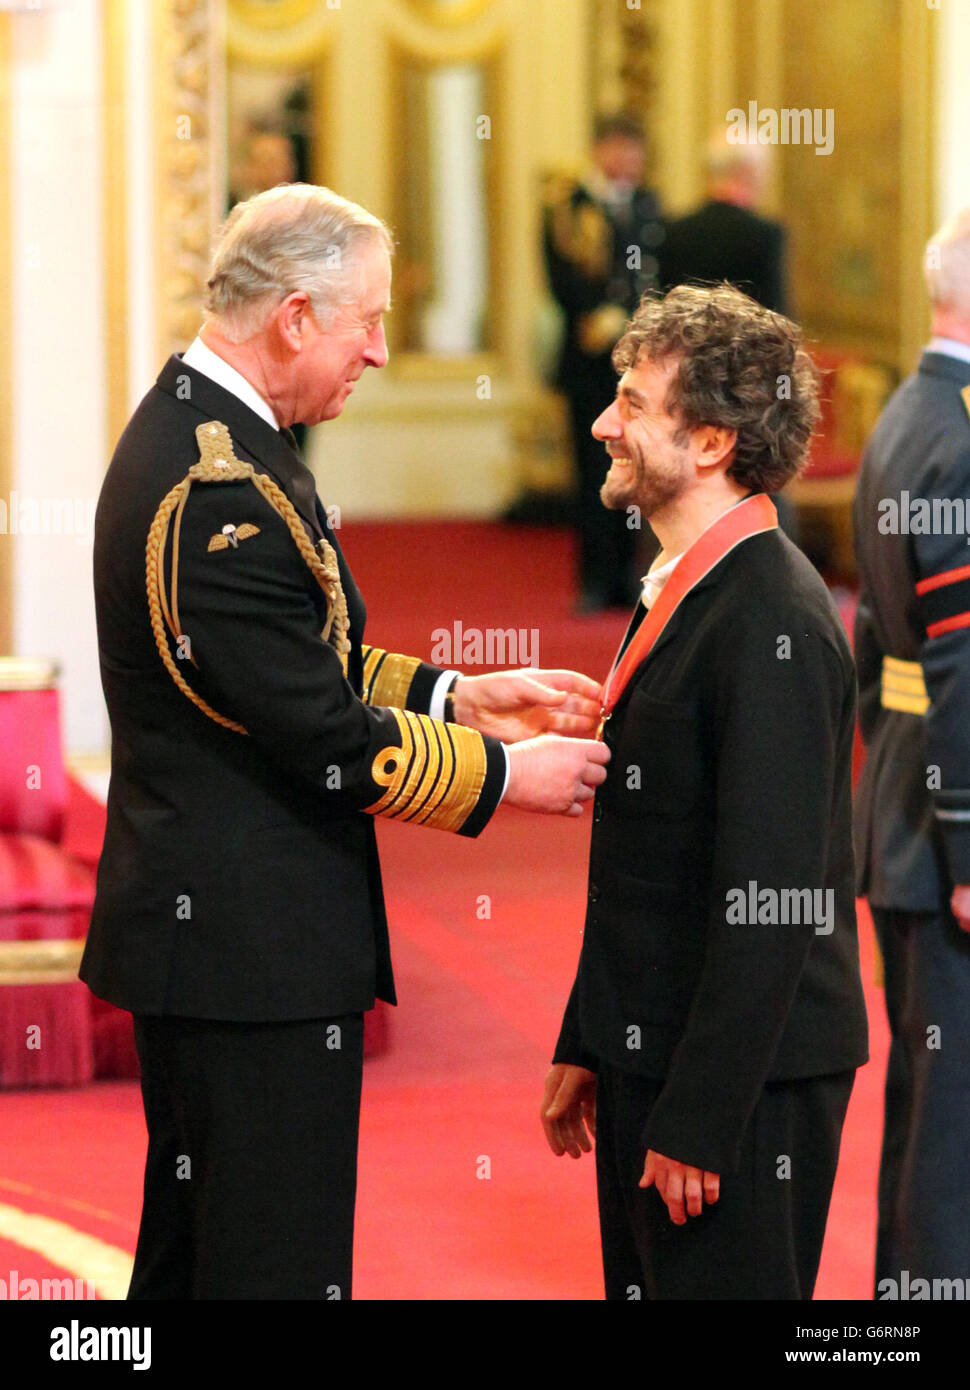 Der Designer Thomas Heatherwick wird von Prince of Wales während einer Investiturzeremonie im Buckingham Palace, London, zum CBE gemacht. Stockfoto